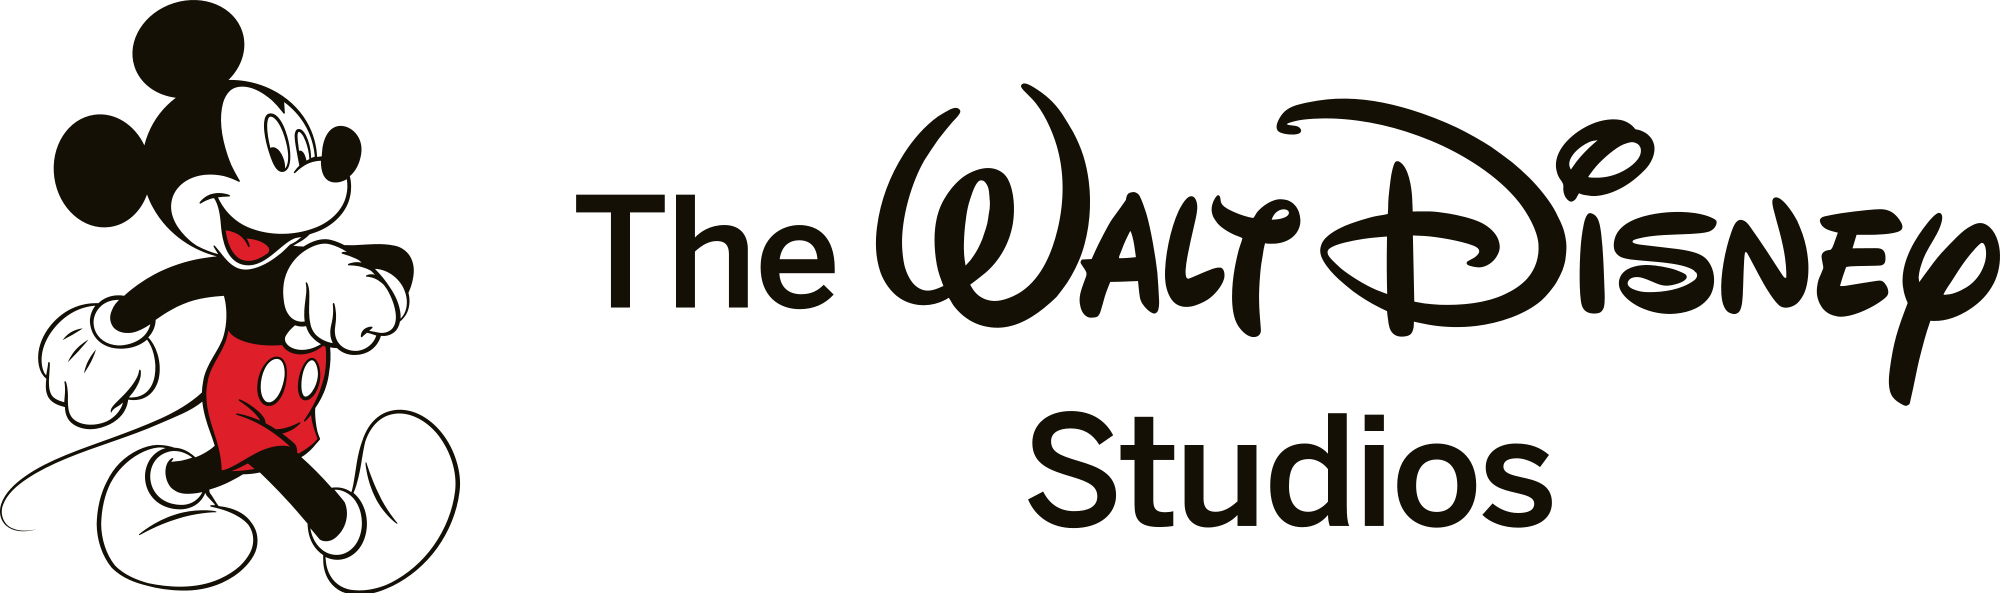 D23 Recap: Walt Disney Studios Live-Action - Marvel Studios, Star ...